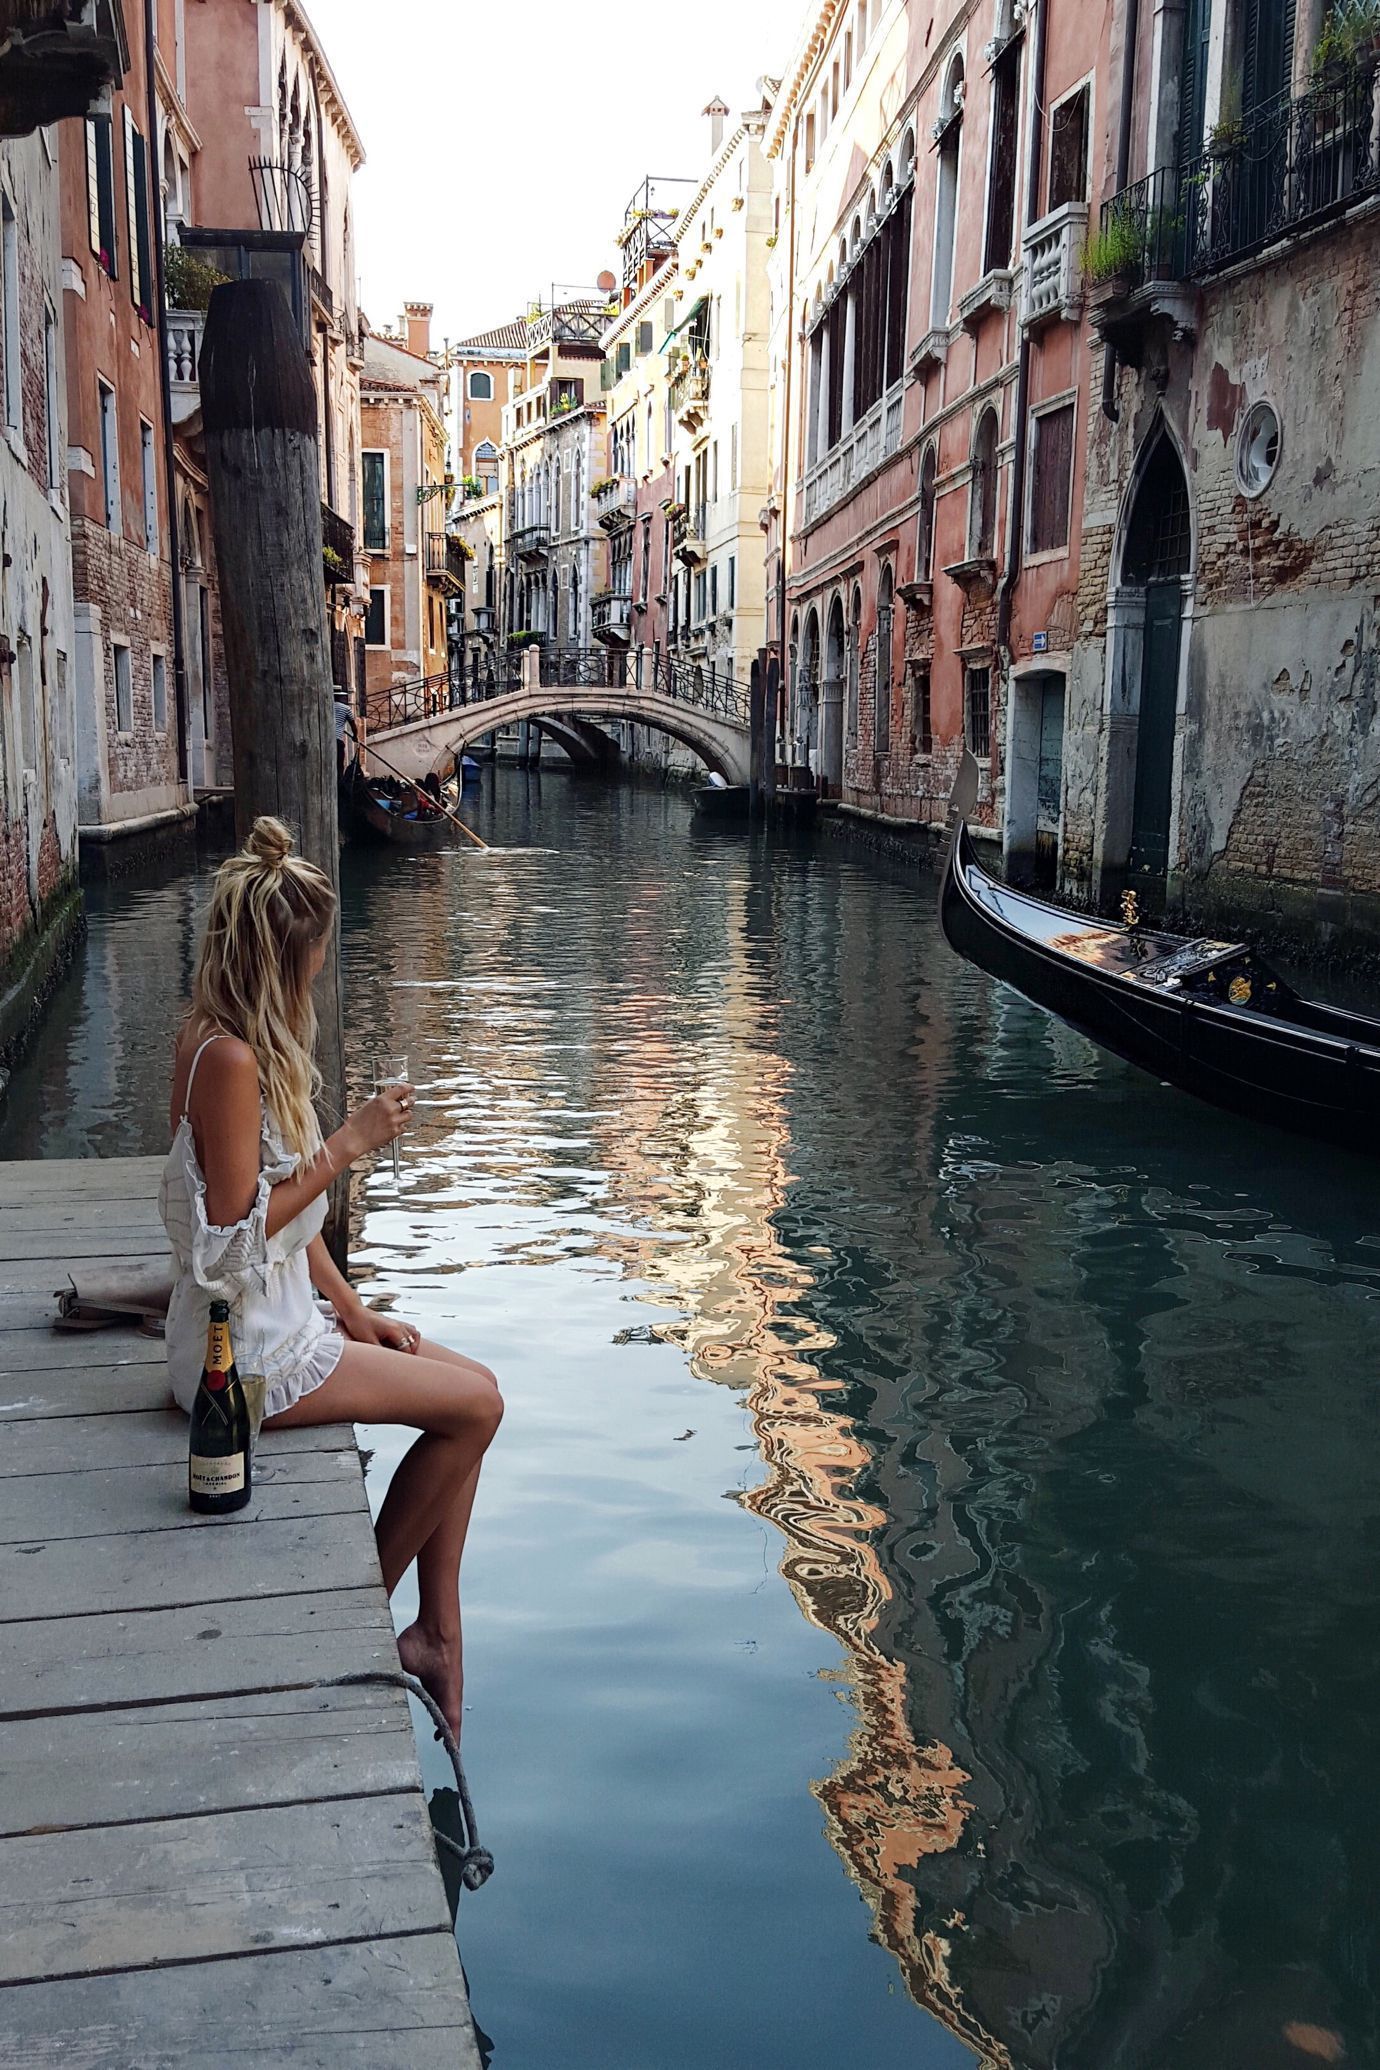 Bandicoot reccomend Seeking a beautiful woman in Venice